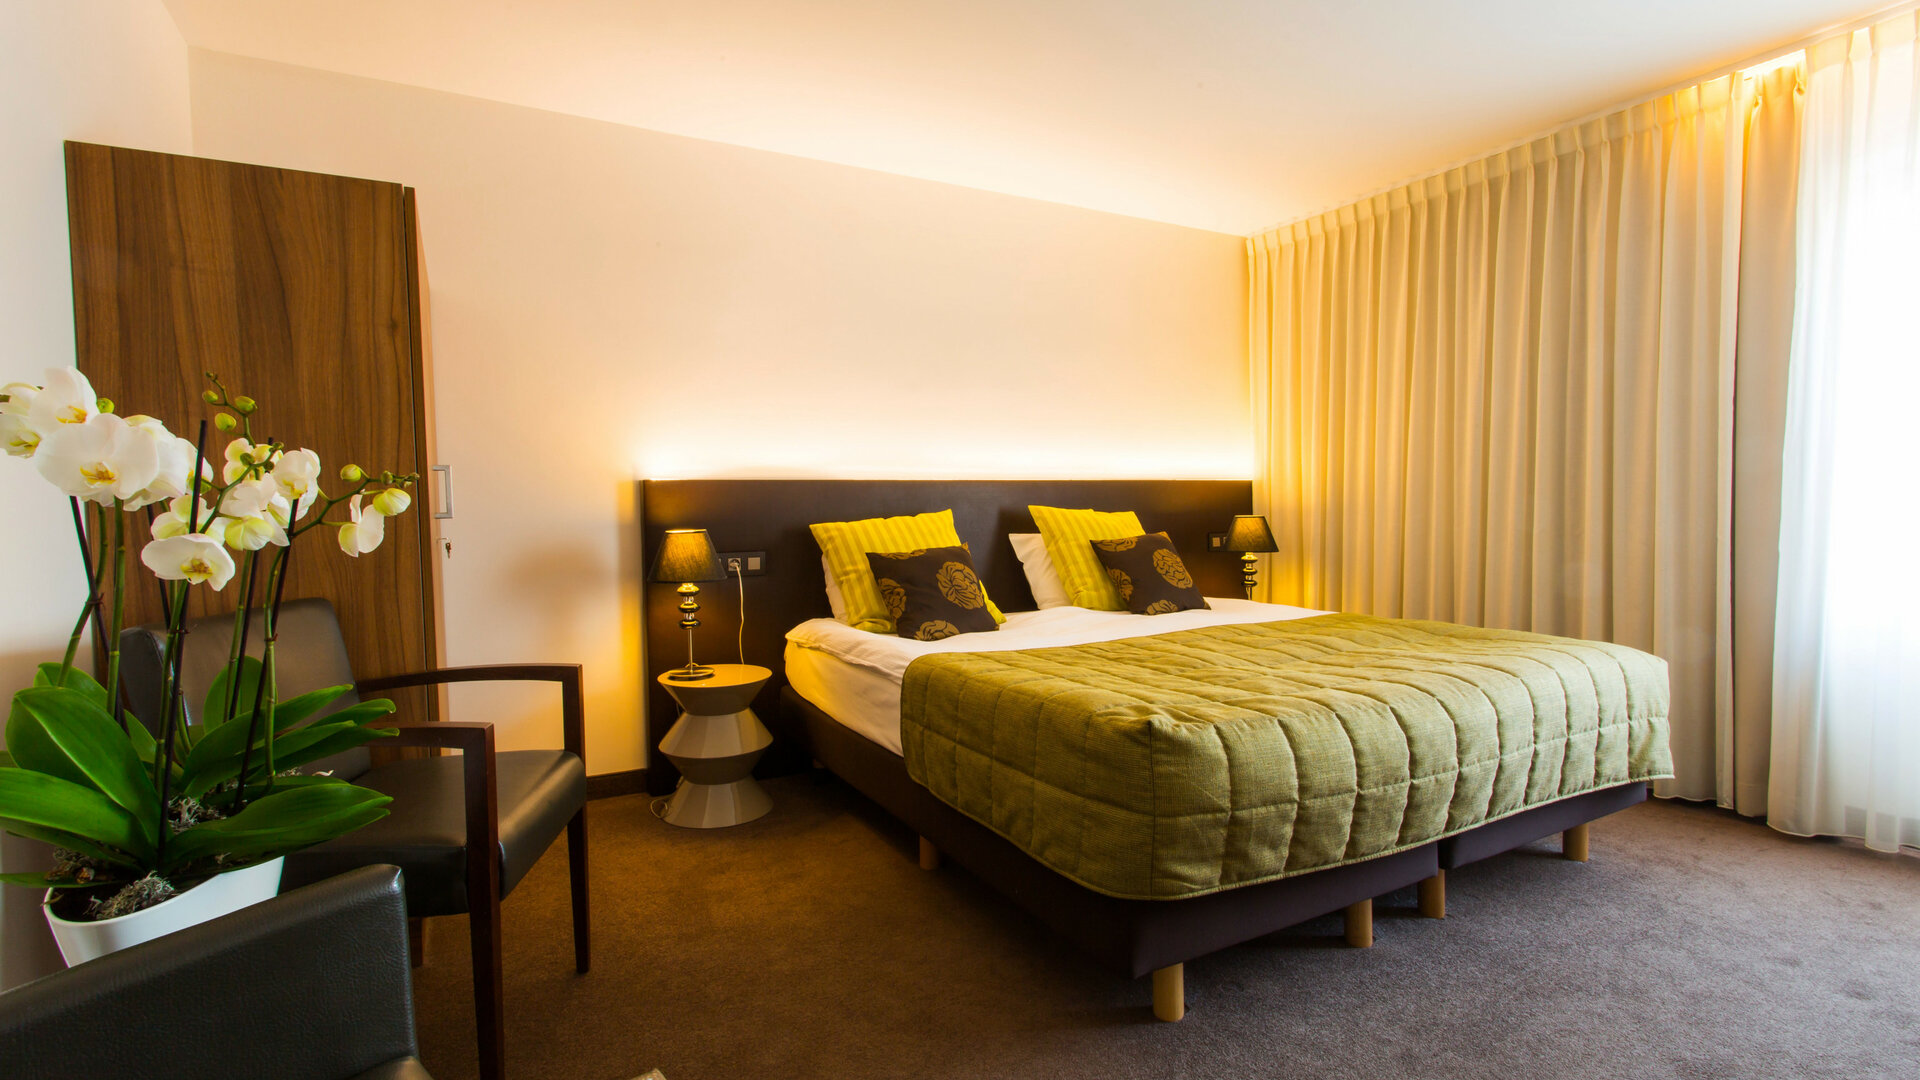 Hotel Malpertuus Riemst - Comfort Double Room